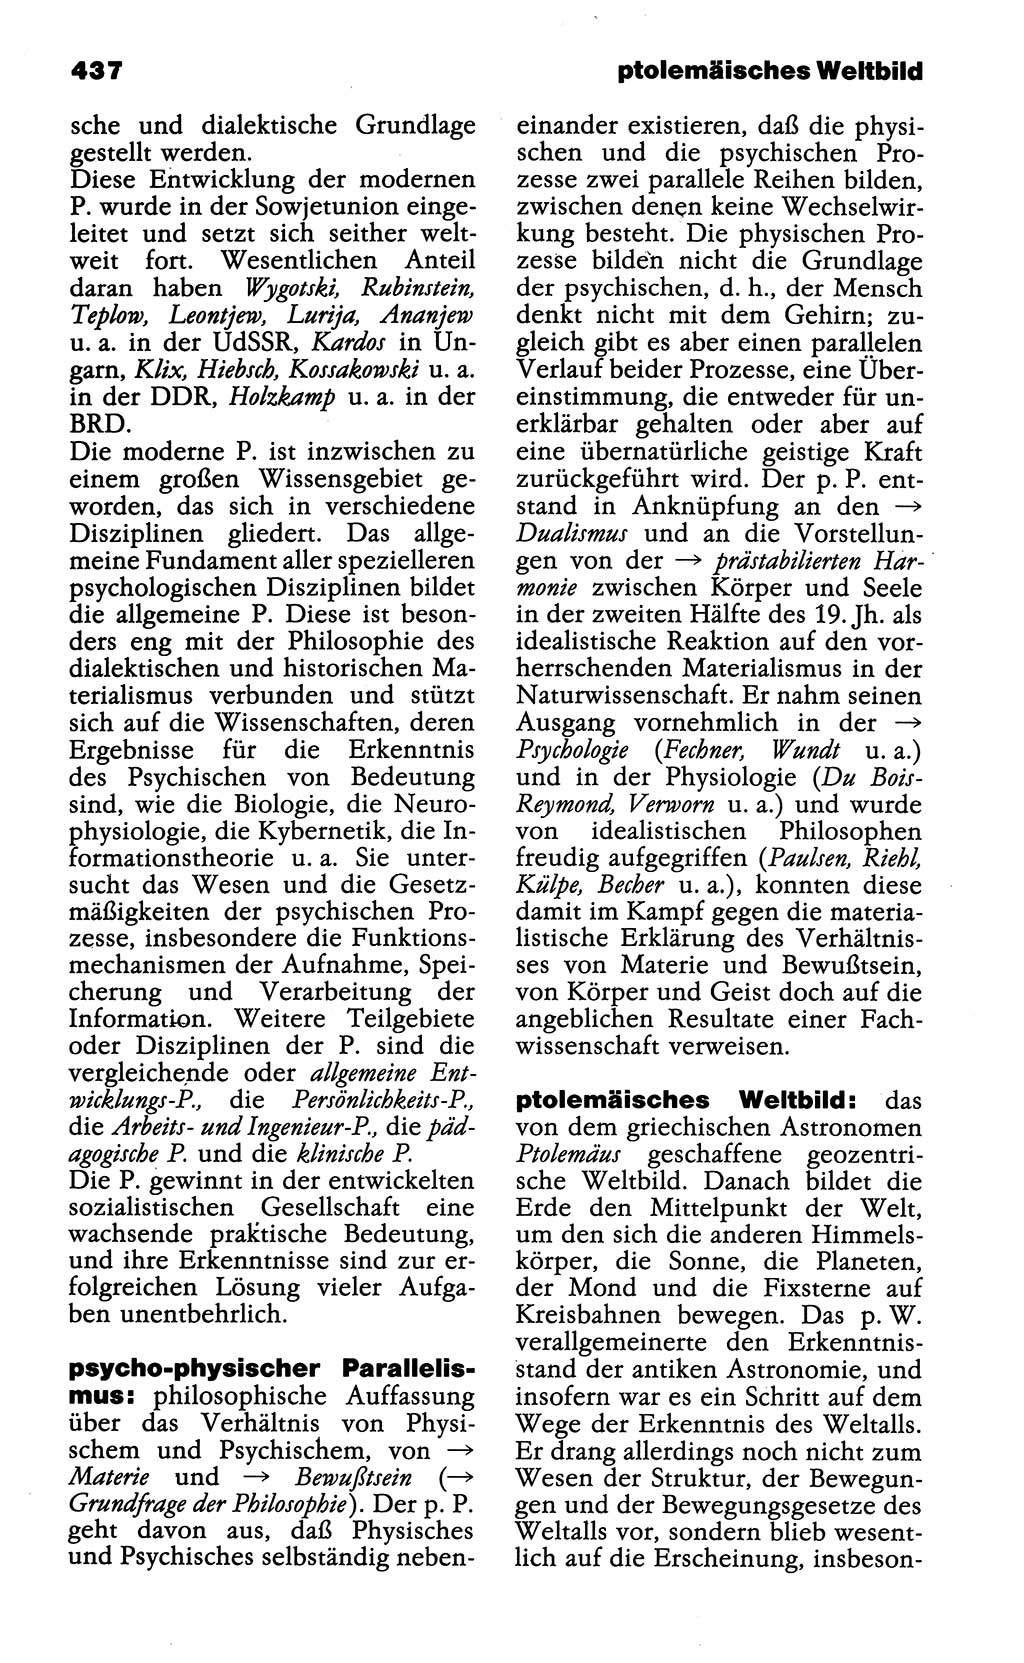 Wörterbuch der marxistisch-leninistischen Philosophie [Deutsche Demokratische Republik (DDR)] 1985, Seite 437 (Wb. ML Phil. DDR 1985, S. 437)